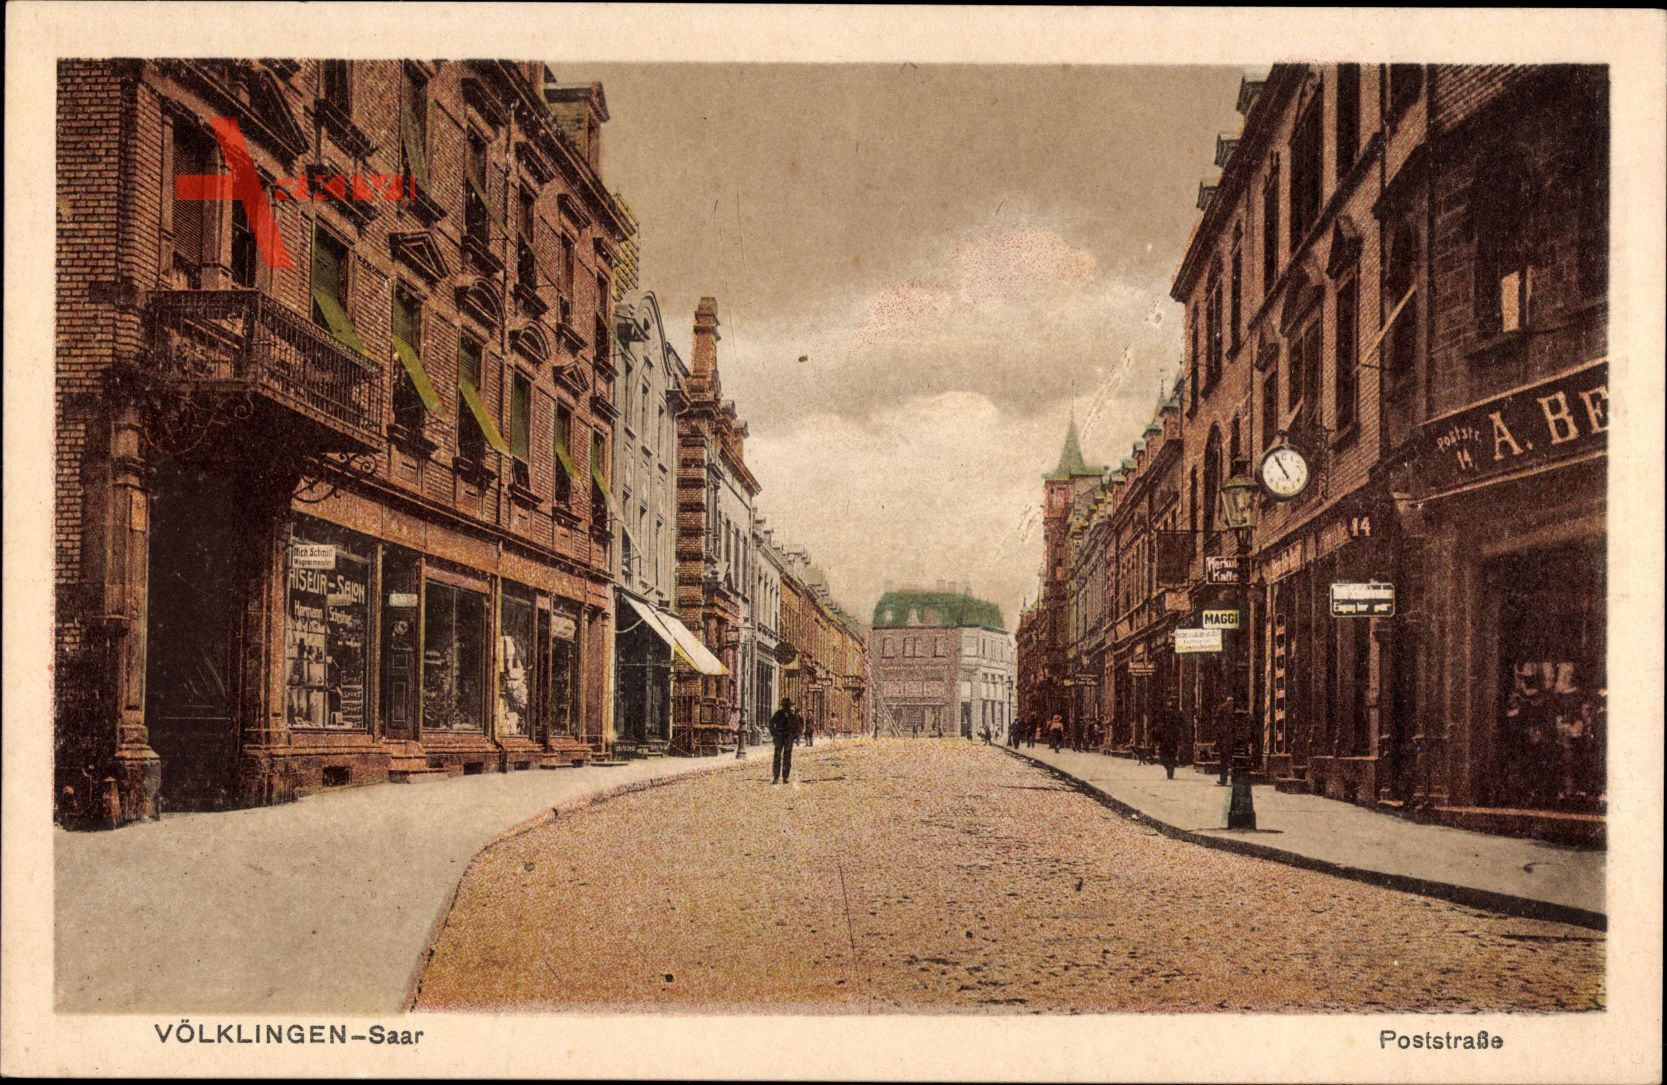 Völklingen im Saarland, Blick in die Poststraße, Geschäfte, Laterne, Uhr